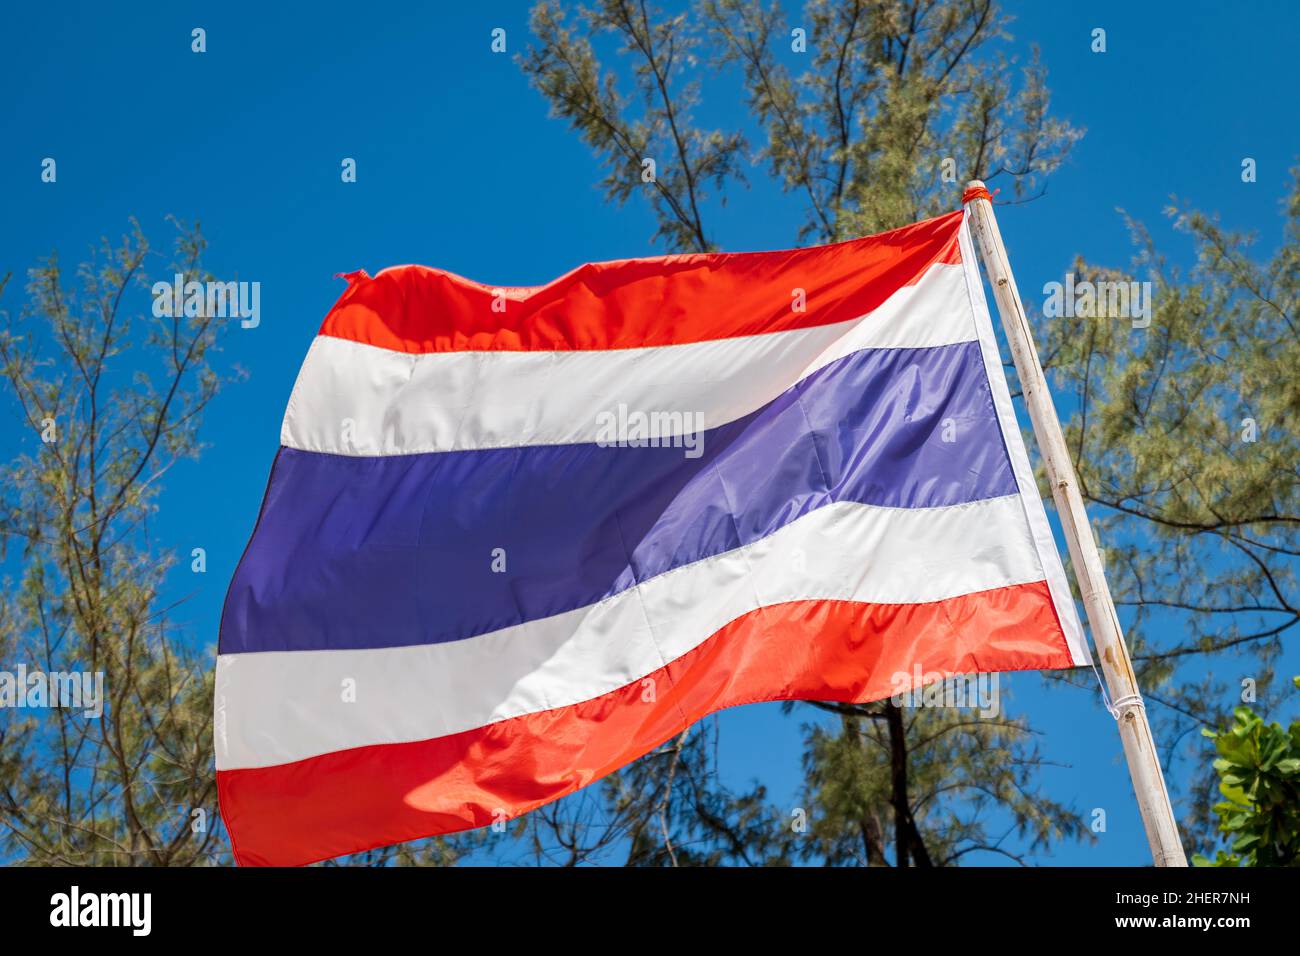 Thailand Flagge, Nationalflagge von Thailand winkt vor blauem Himmel Hintergrund. Flagge des thailändischen Königreichs. Stockfoto